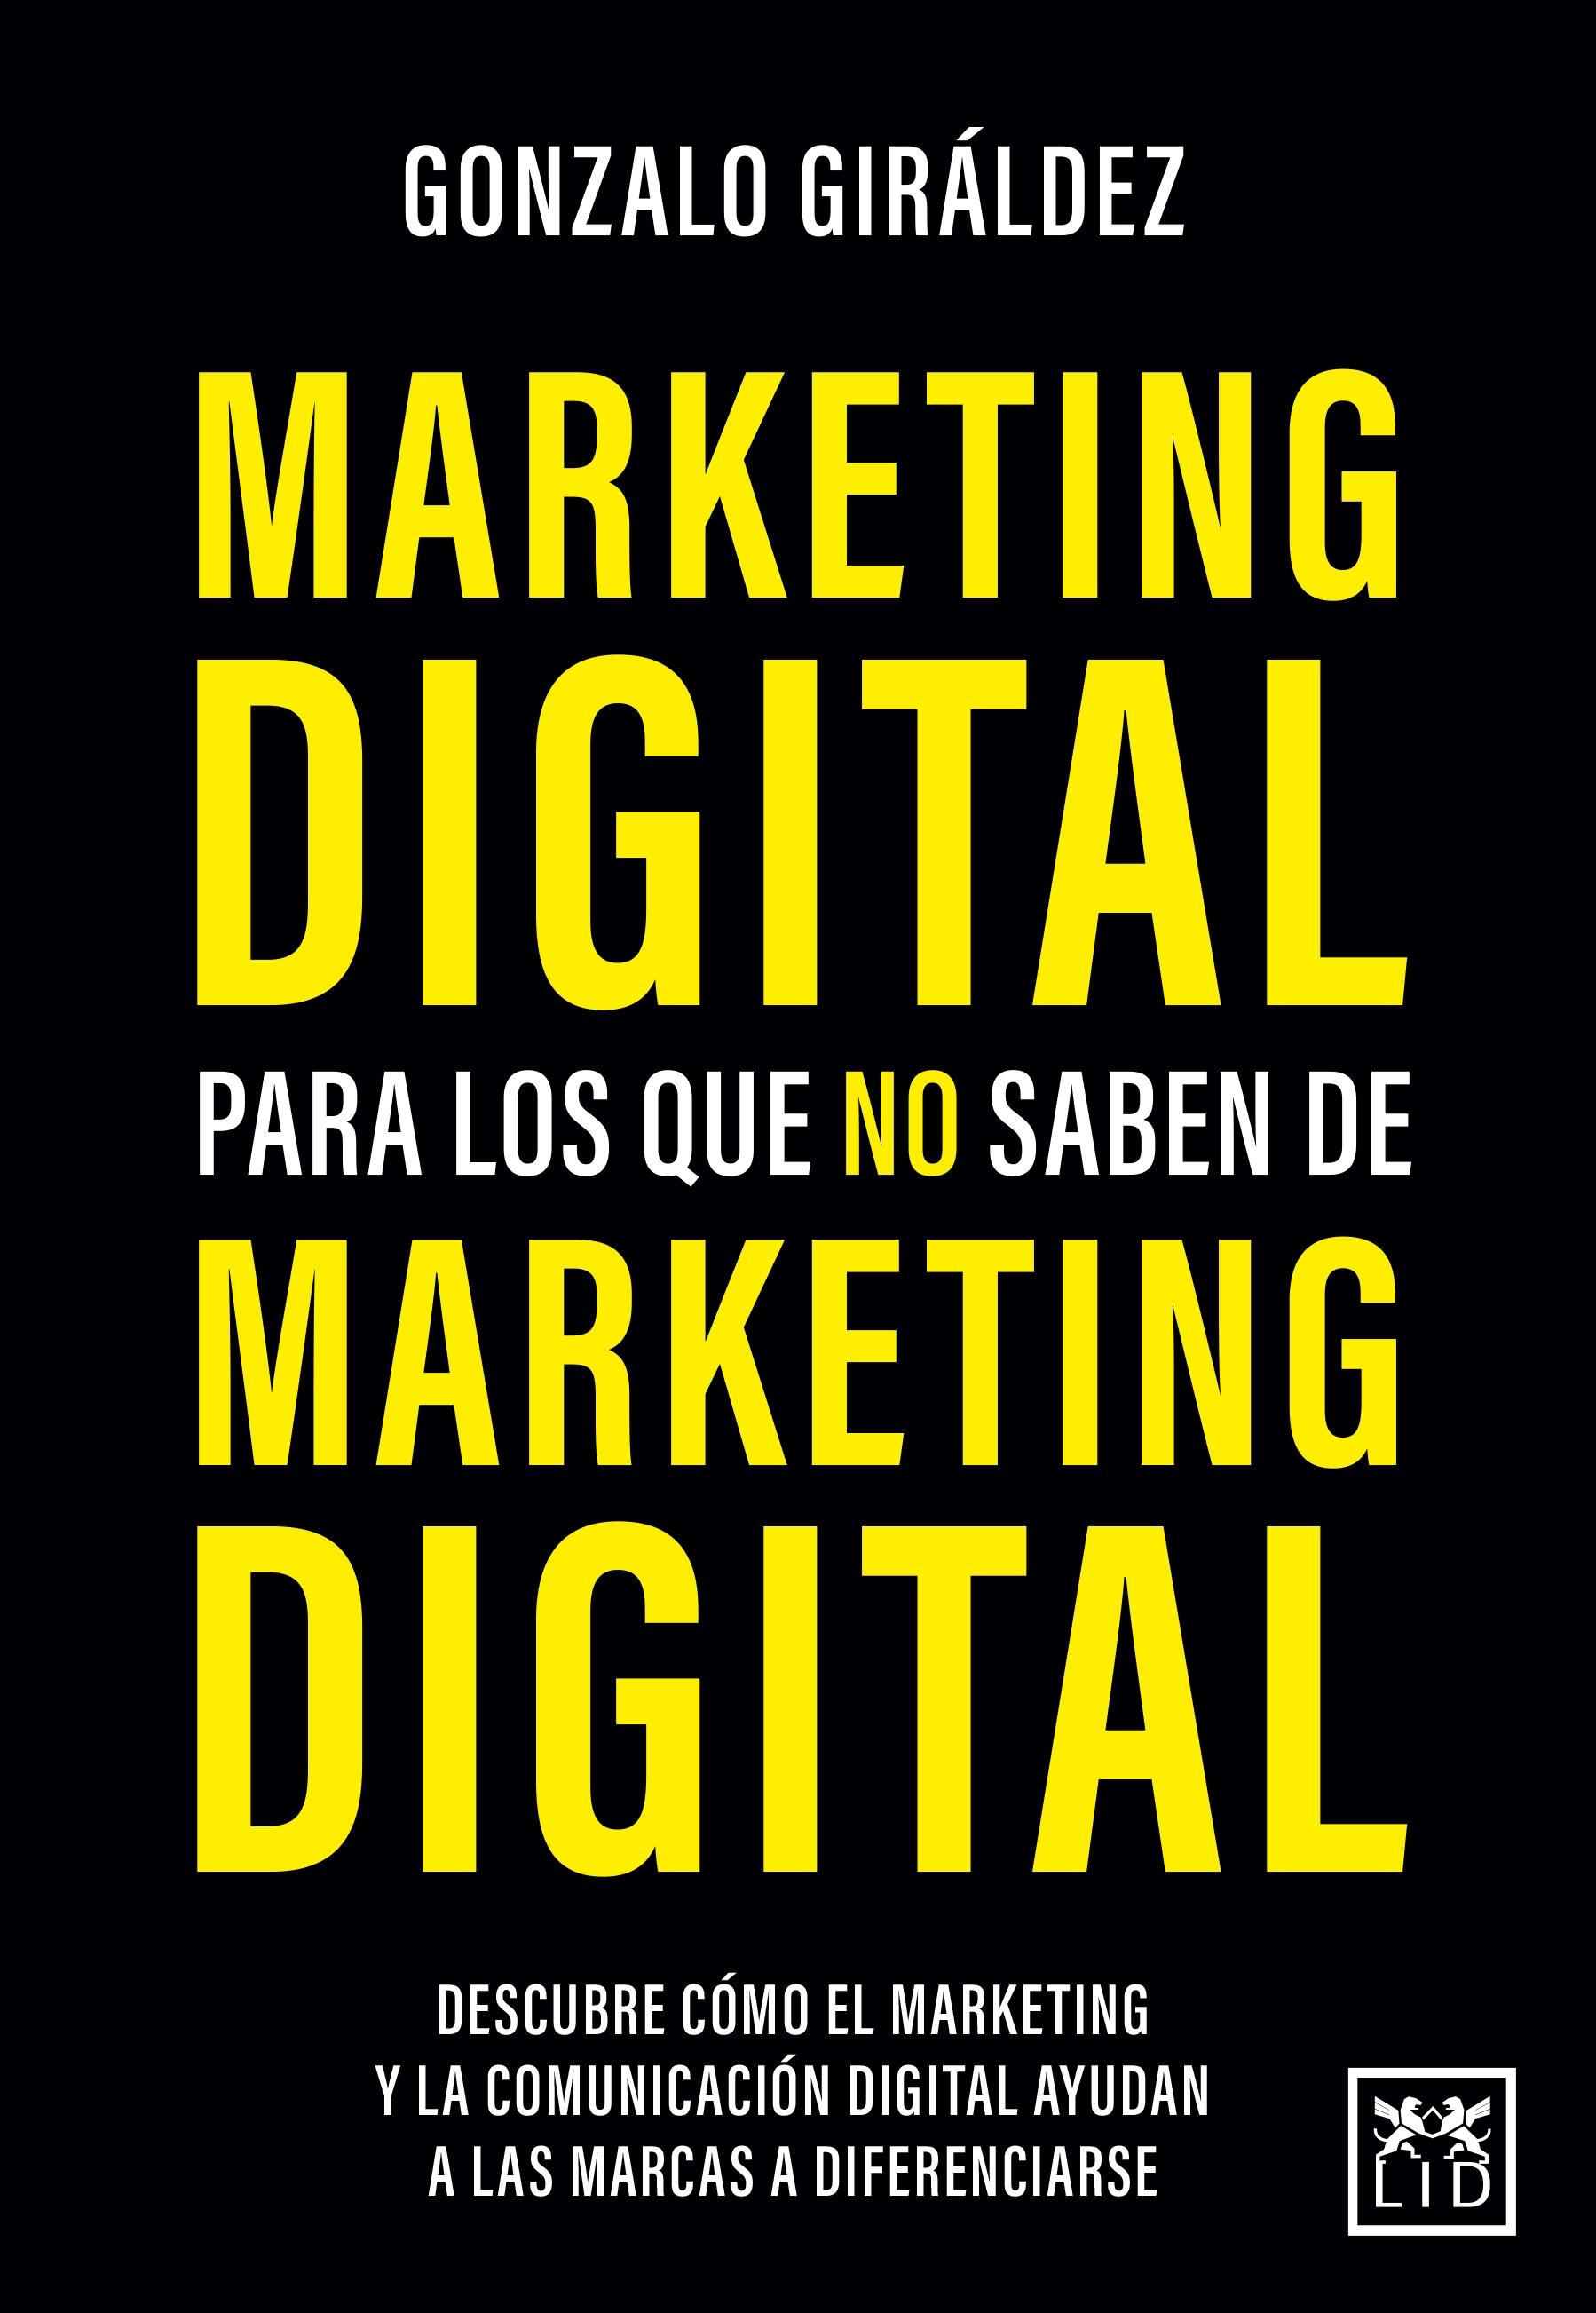 Marketing digital para los que no saben de marketing digital. 